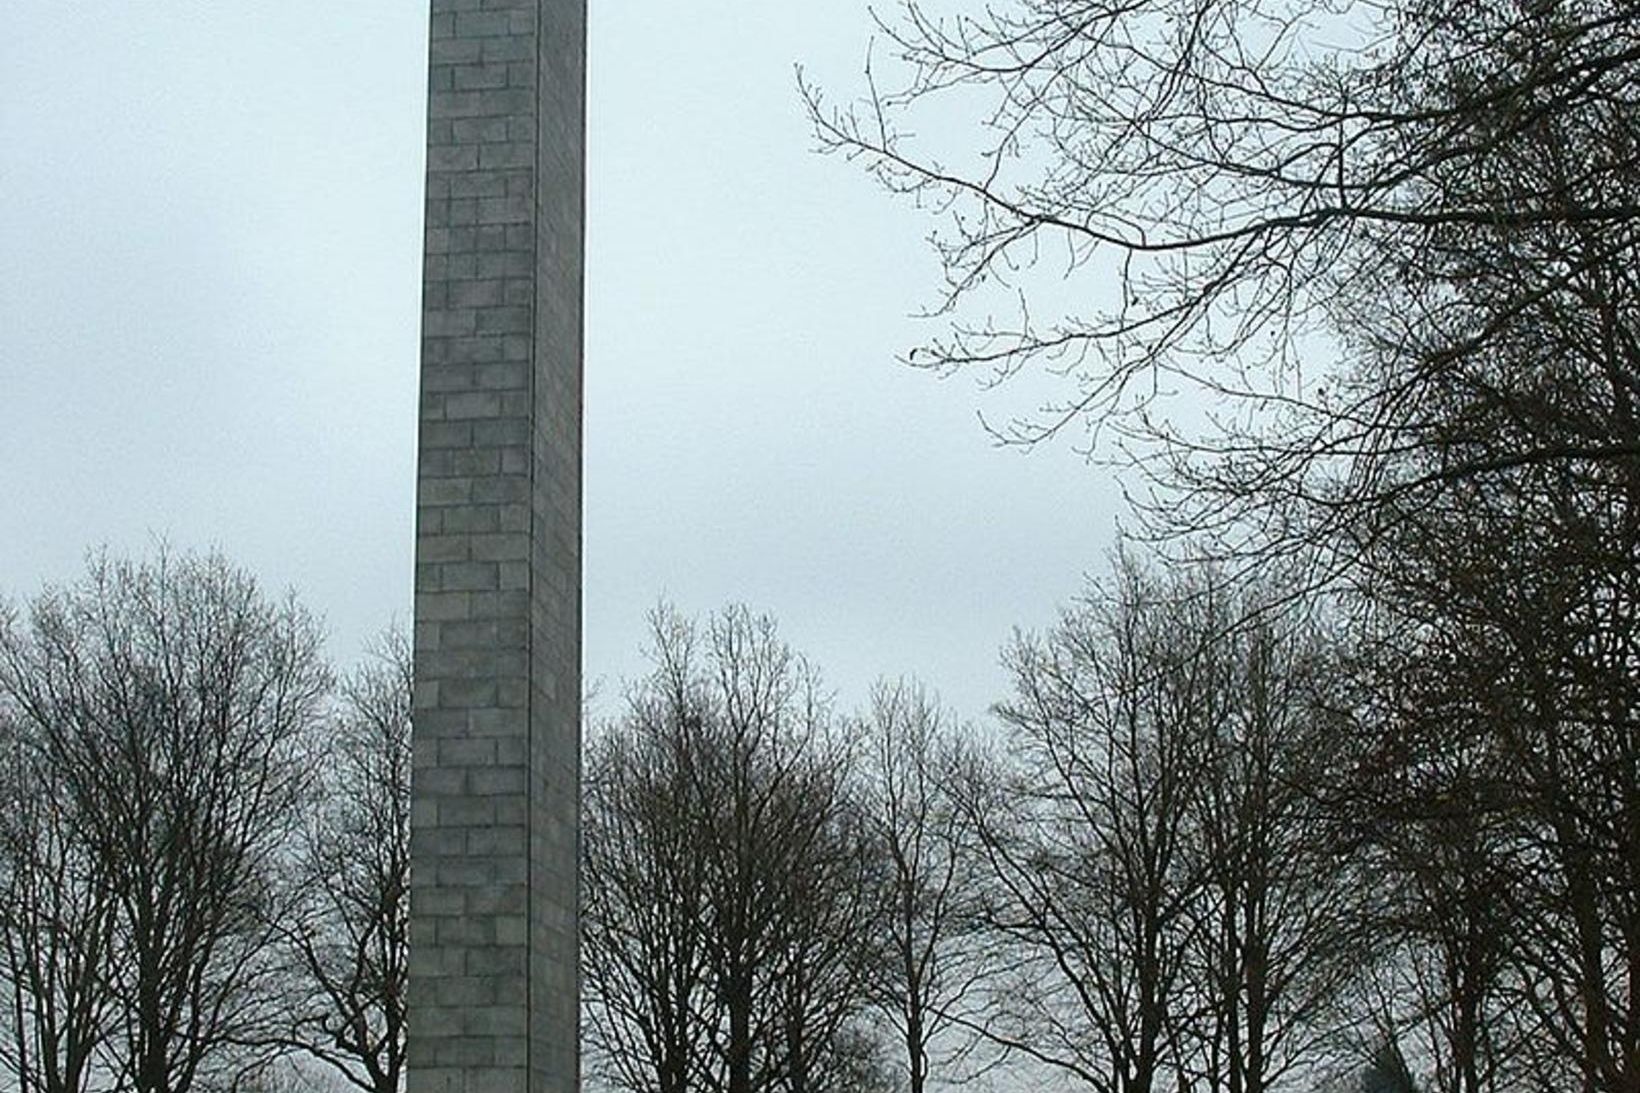 Minnismerki við Neuengamme útrýmingarbúðirnar.